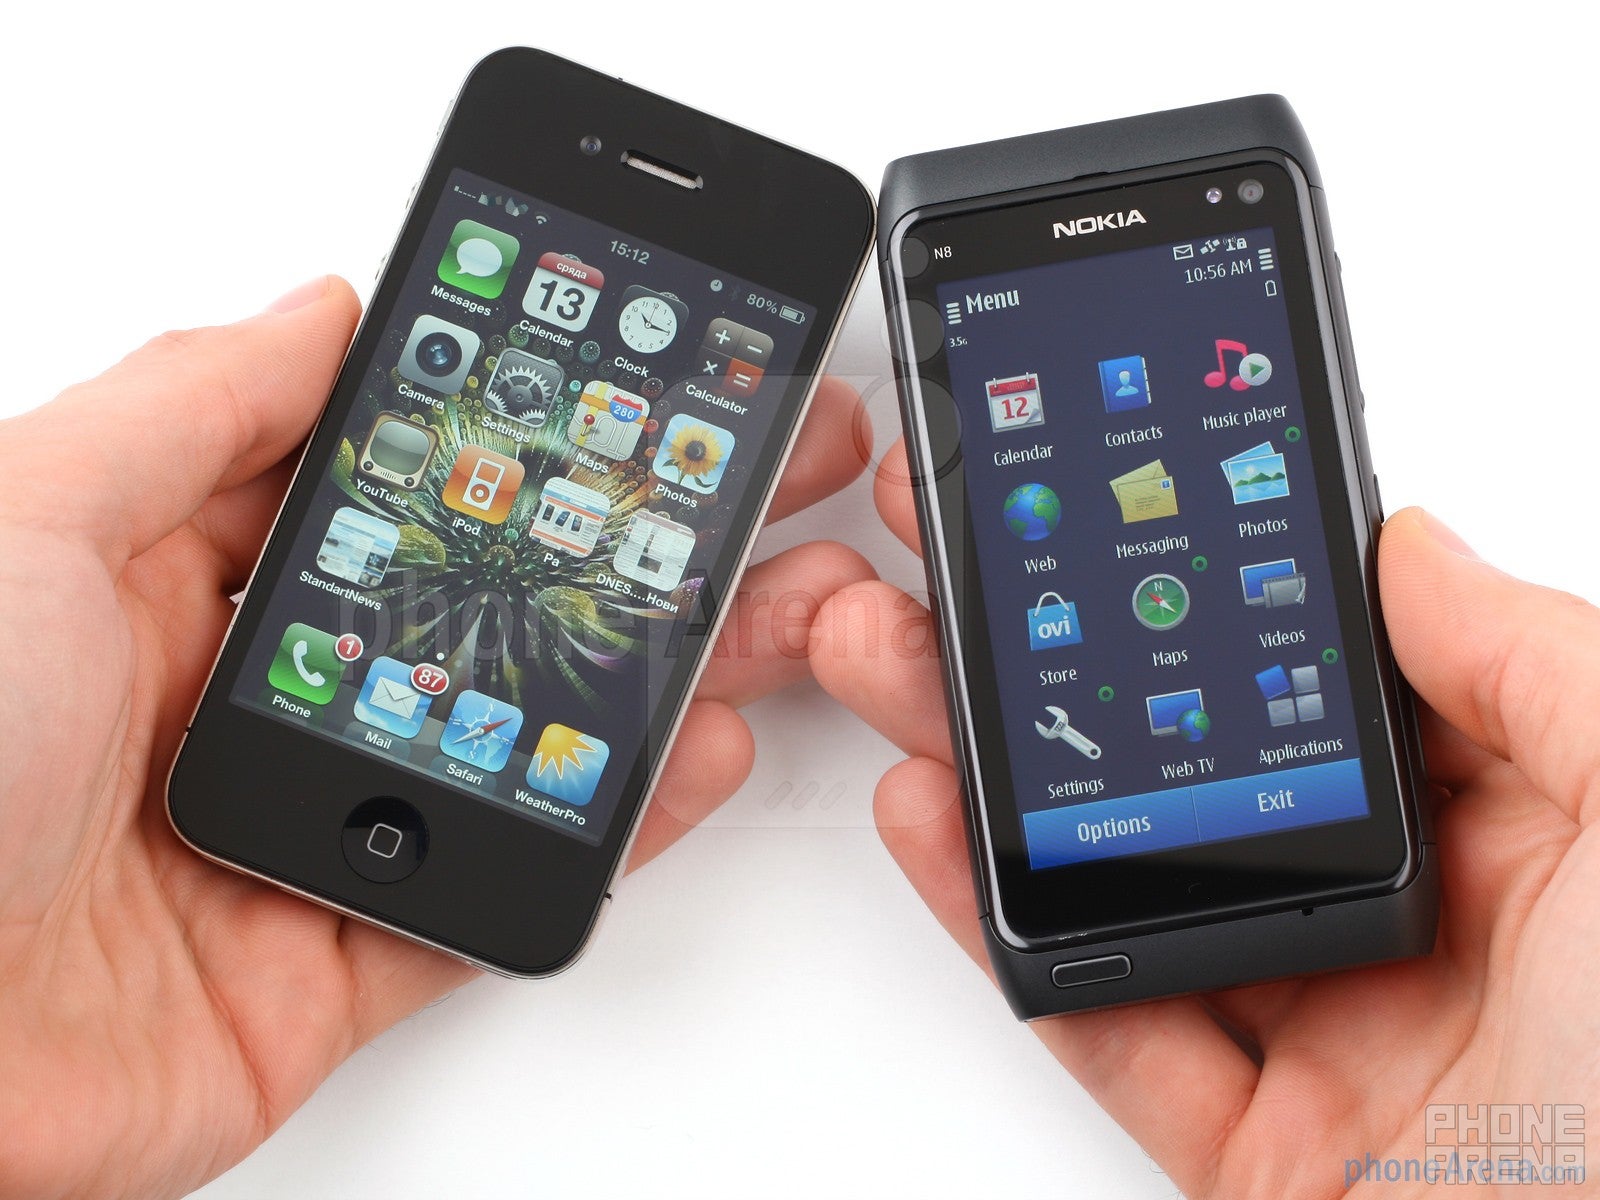 Nokia N8 vs Apple iPhone 4